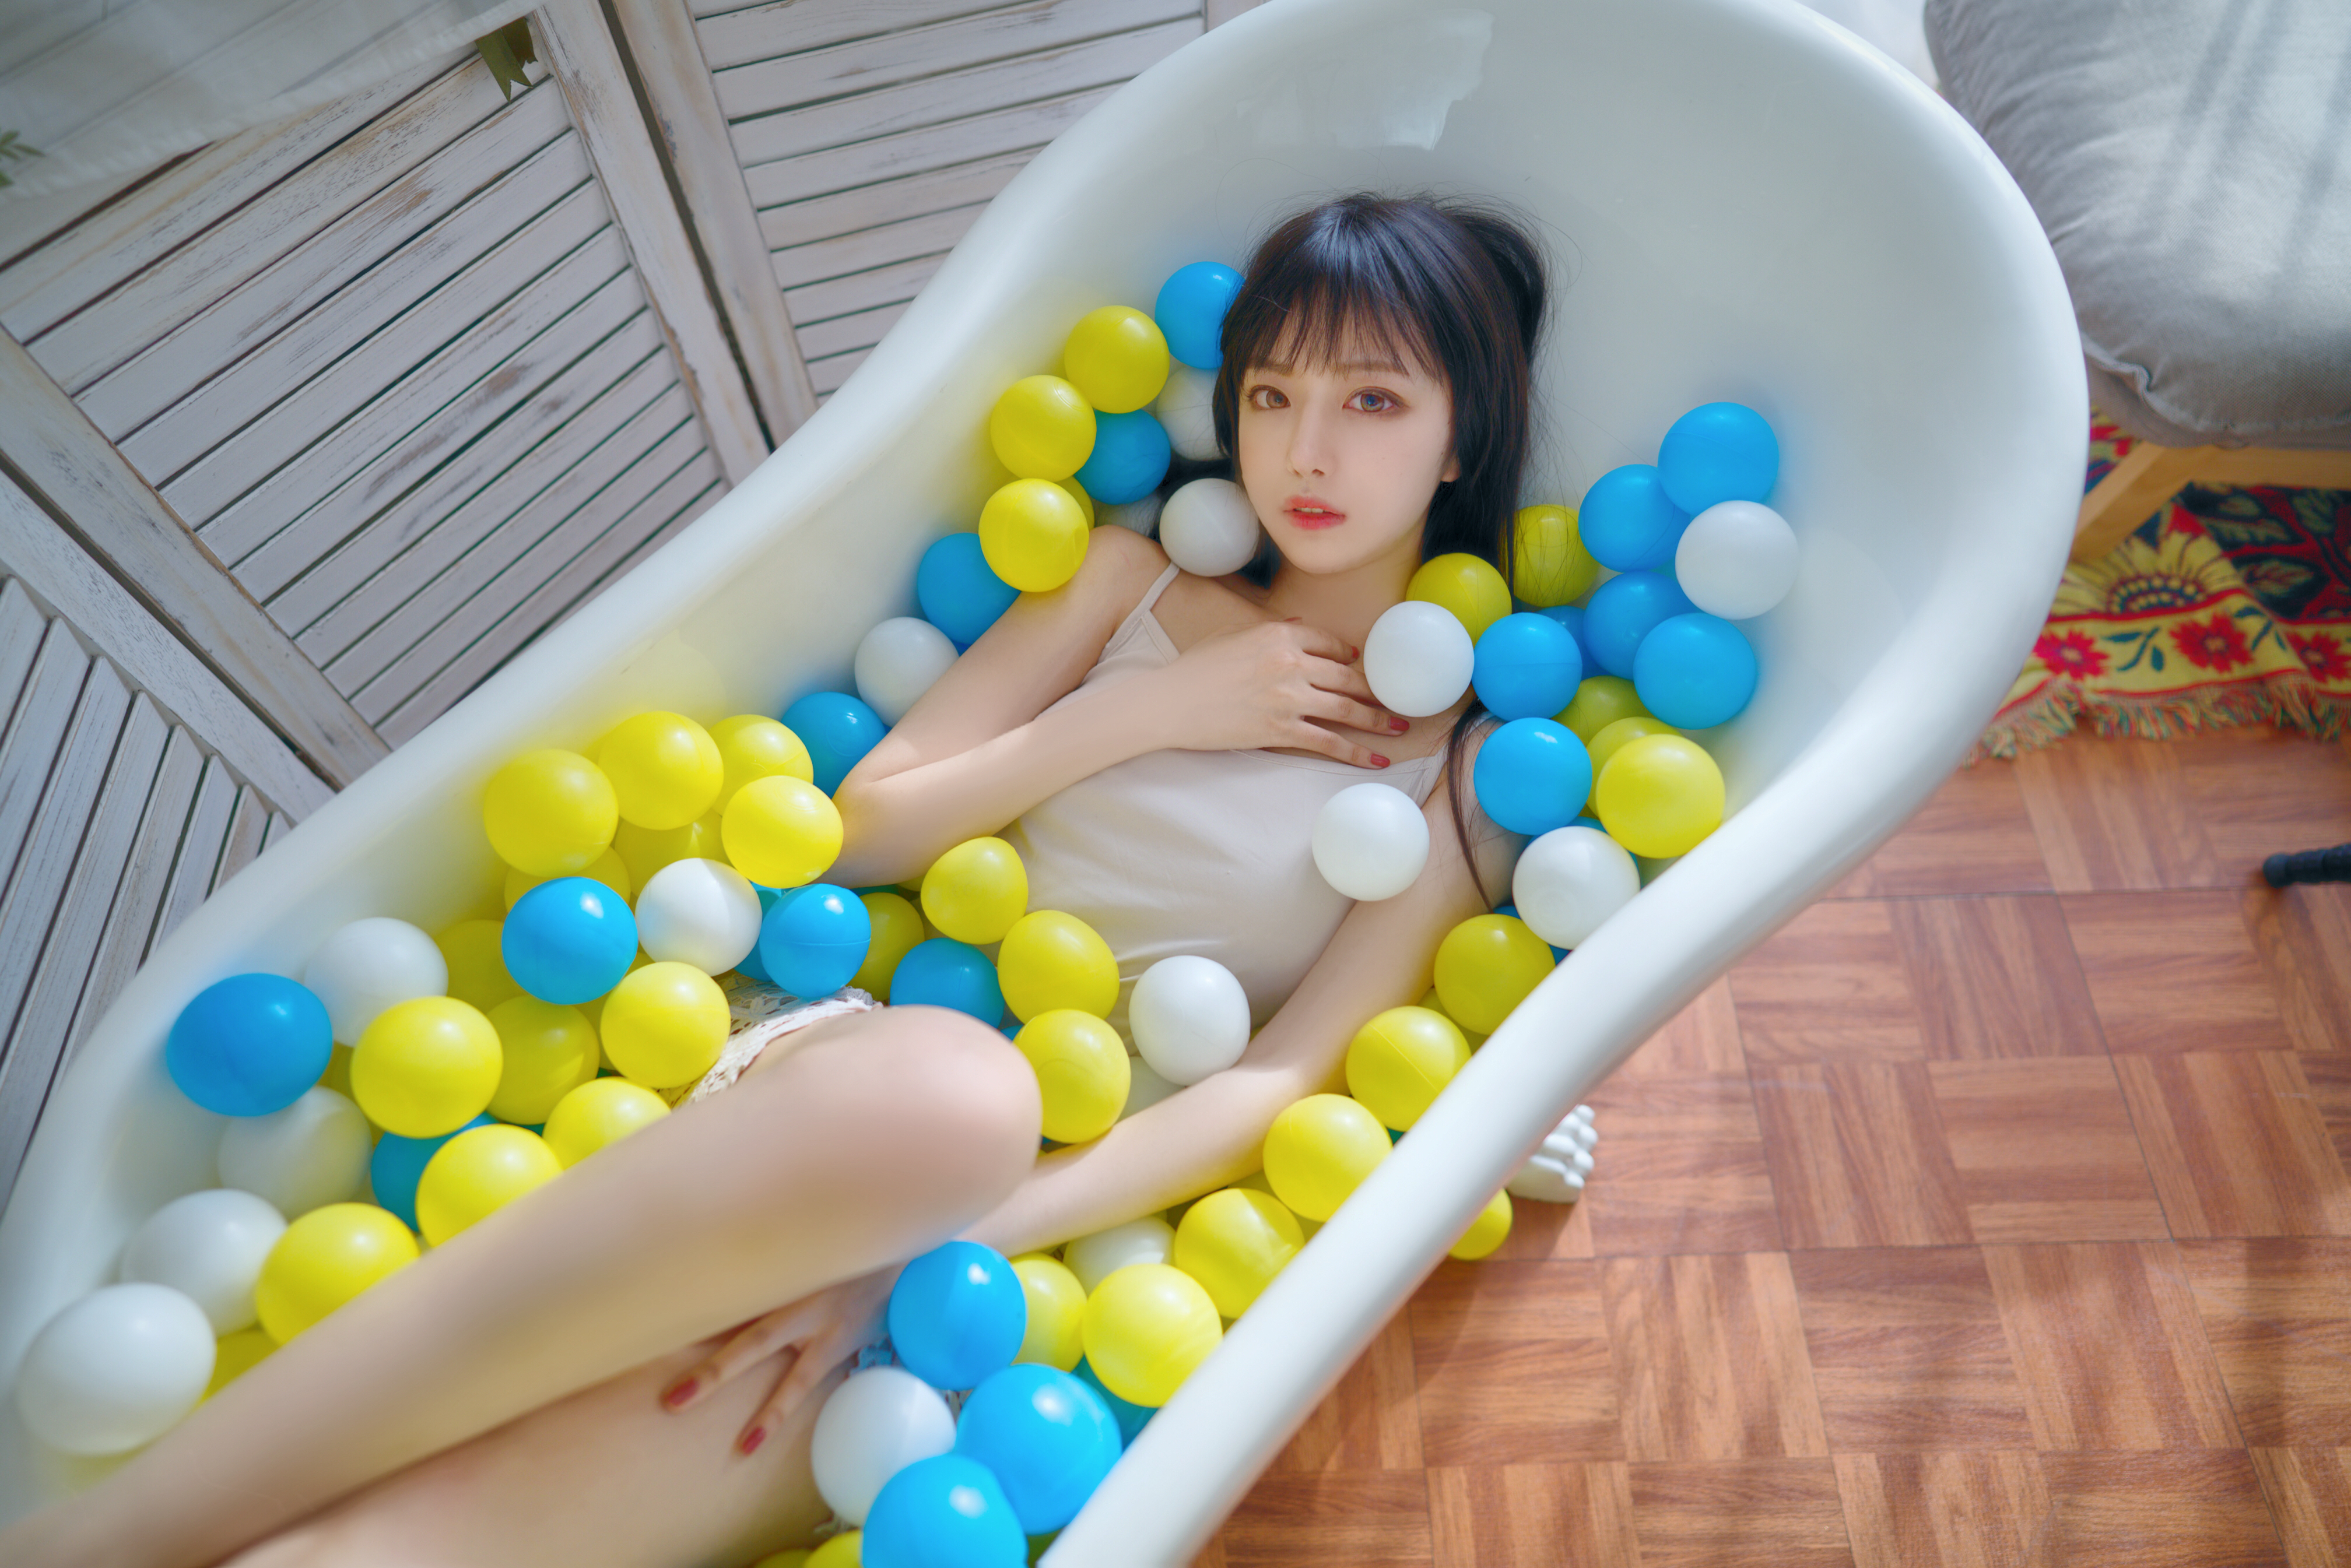 Asian In Bathtub Ball Pit Xiaolulu 4032x2690